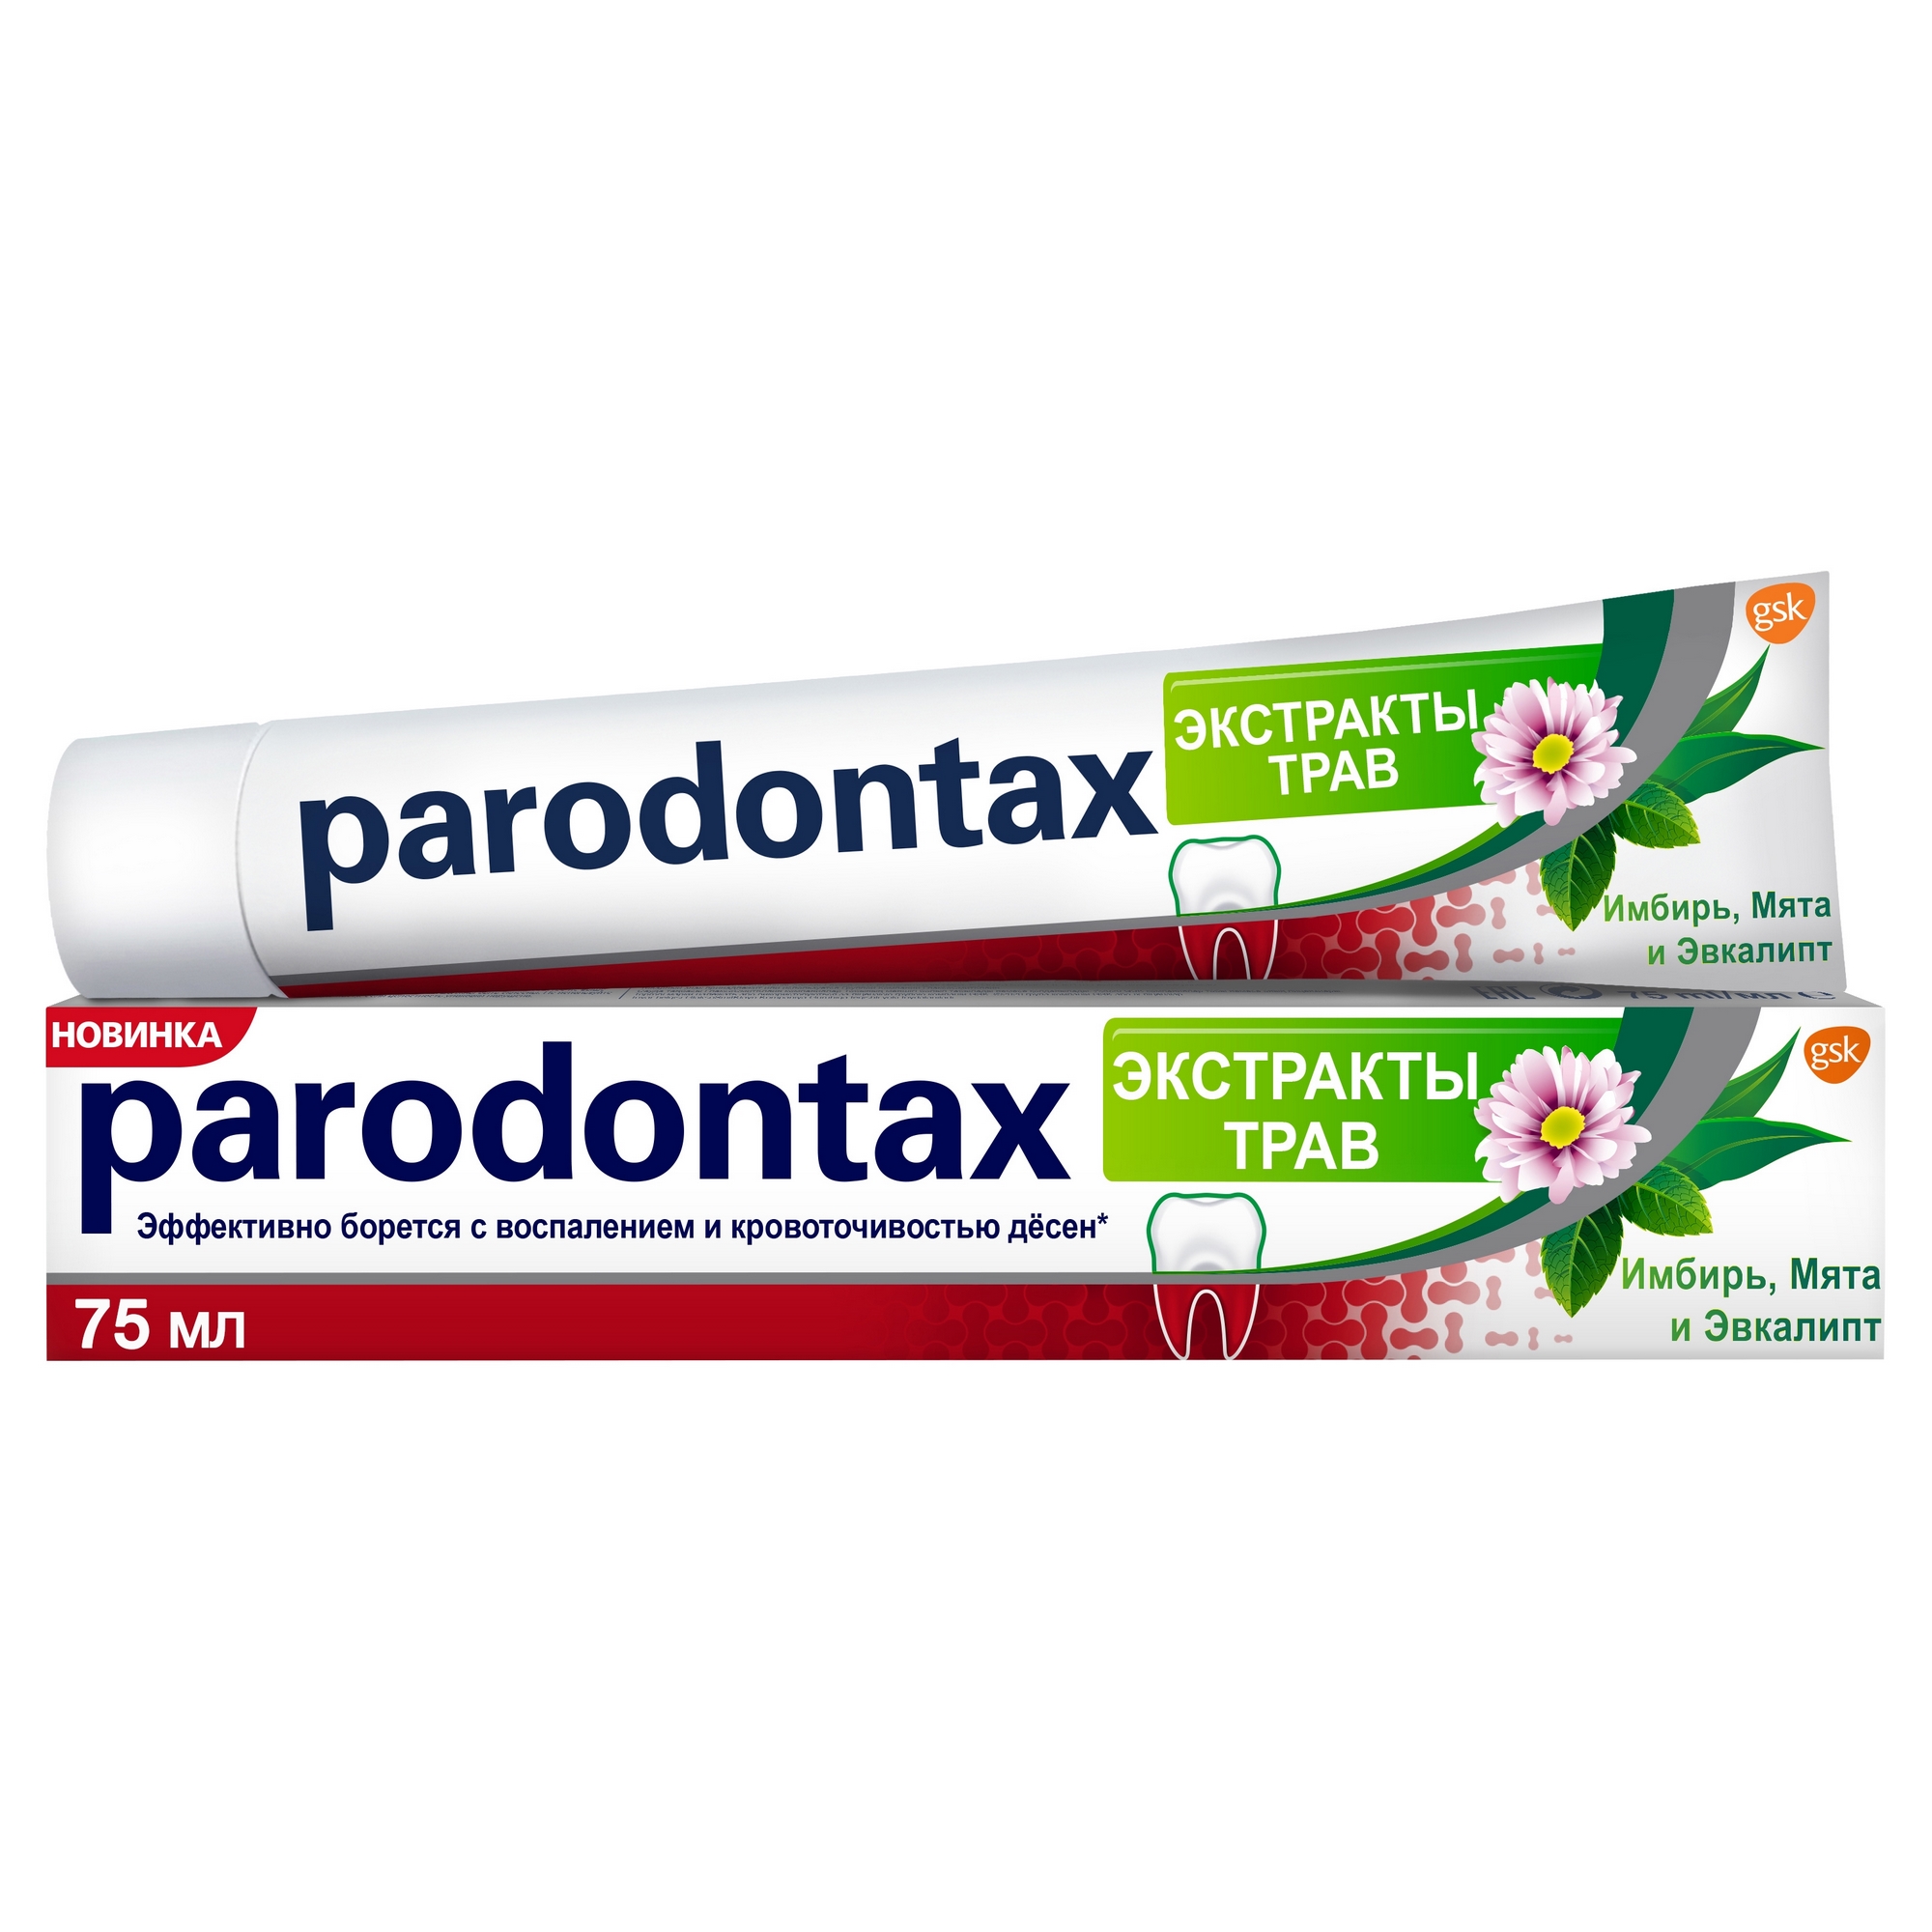 Зубная паста Parodontax Экстракты трав 75 мл зубная паста parodontax экстракты трав 75 мл